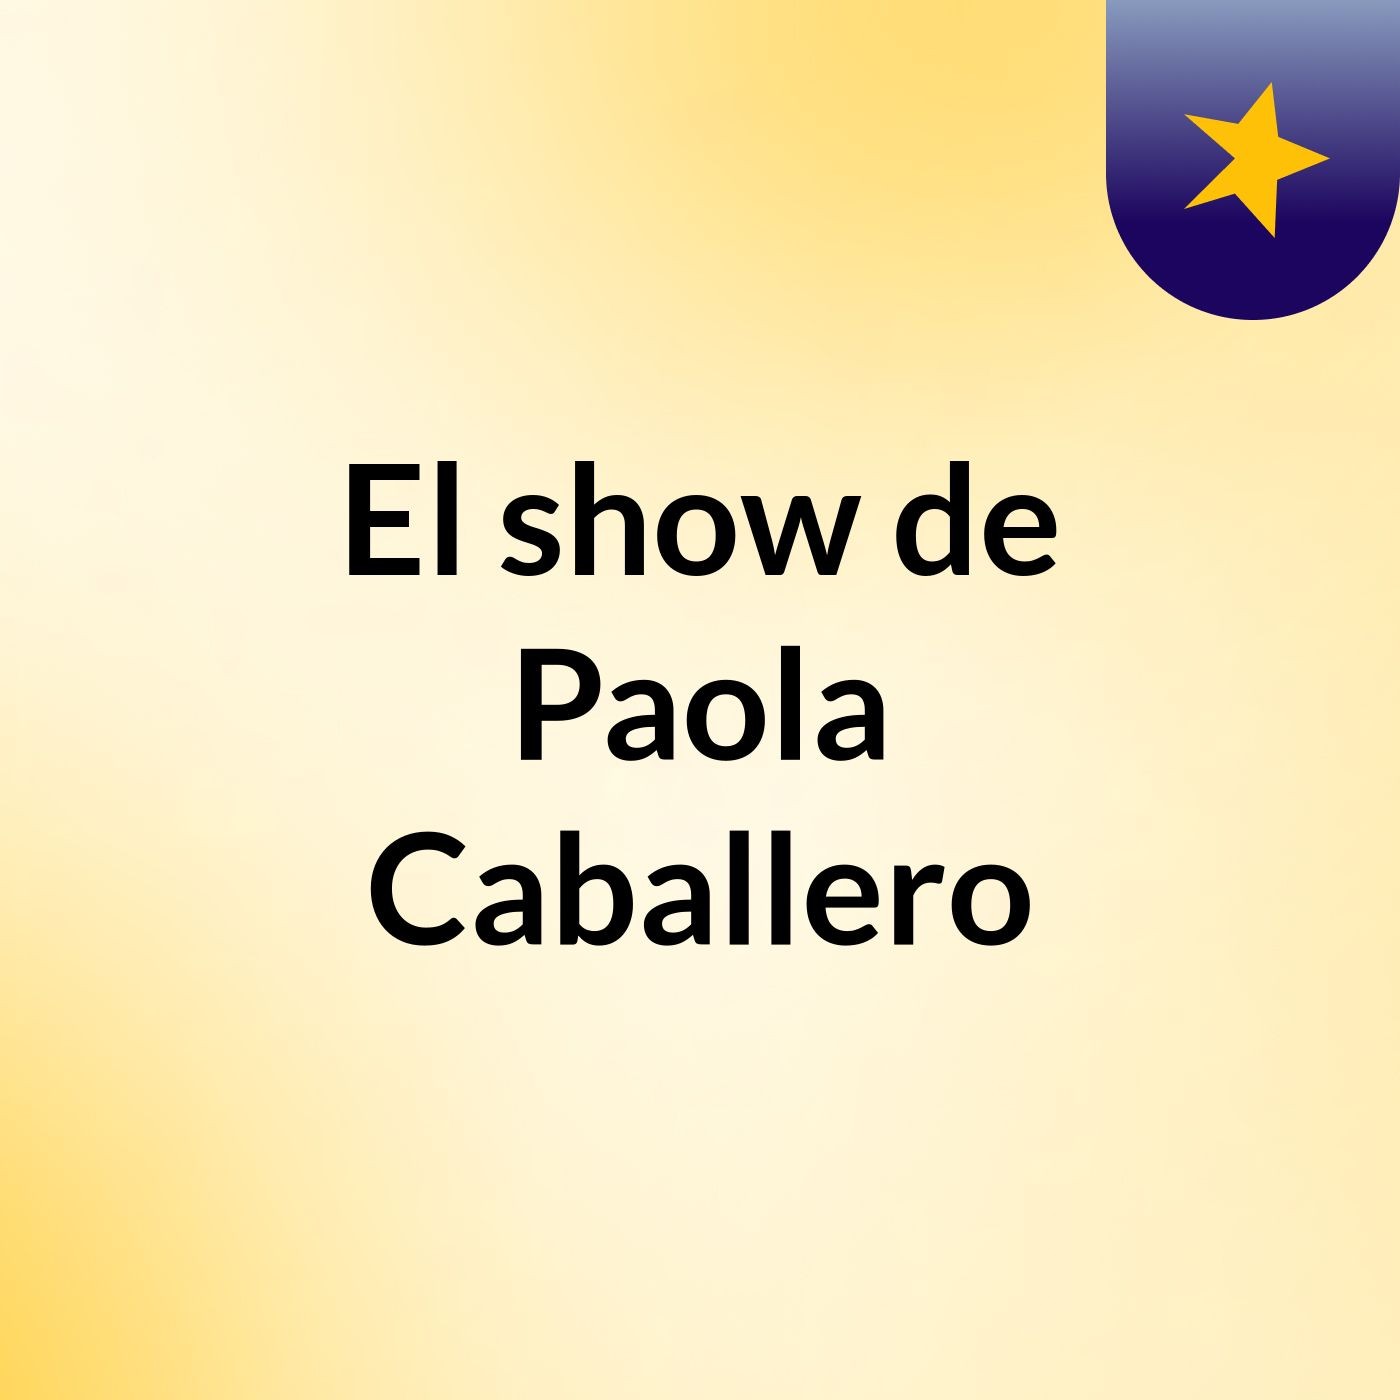 El show de Paola Caballero